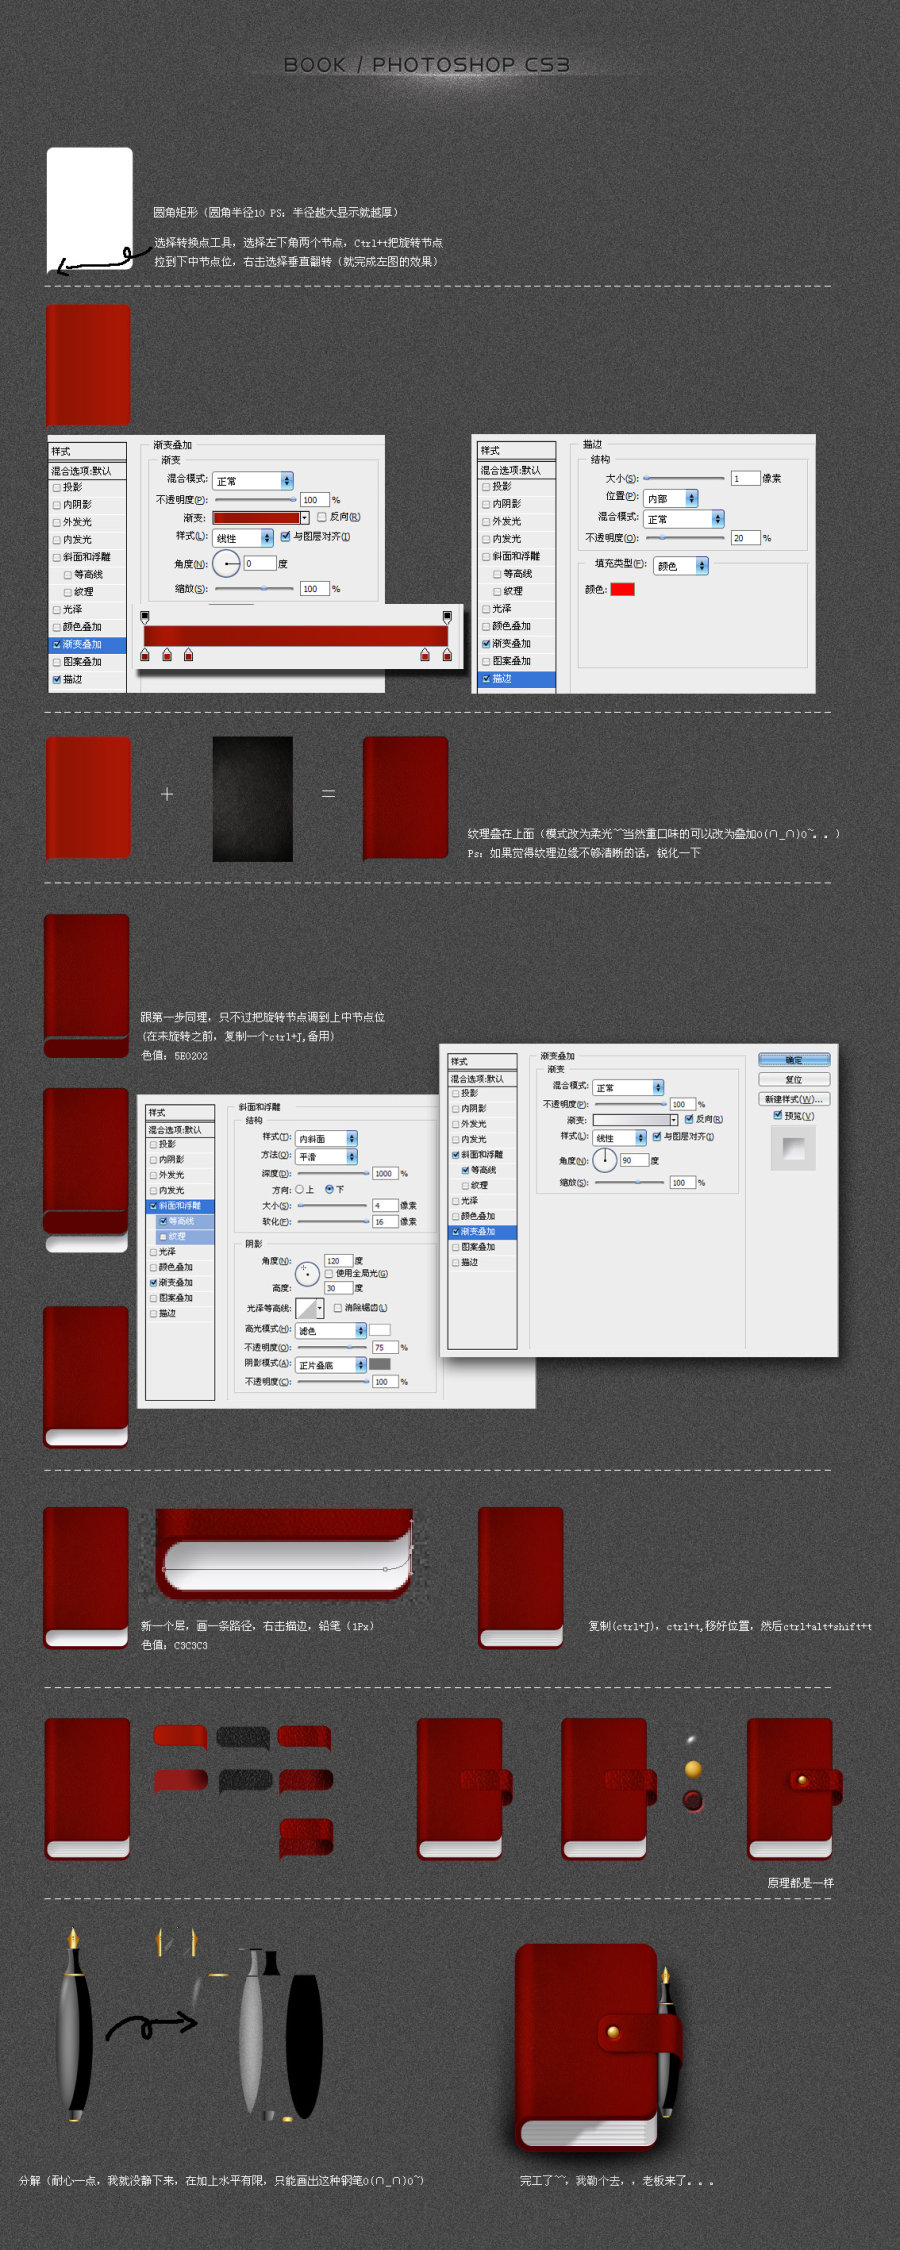 PhotoShop繪制夾著鋼筆的紅色記事本圖標教程 三聯